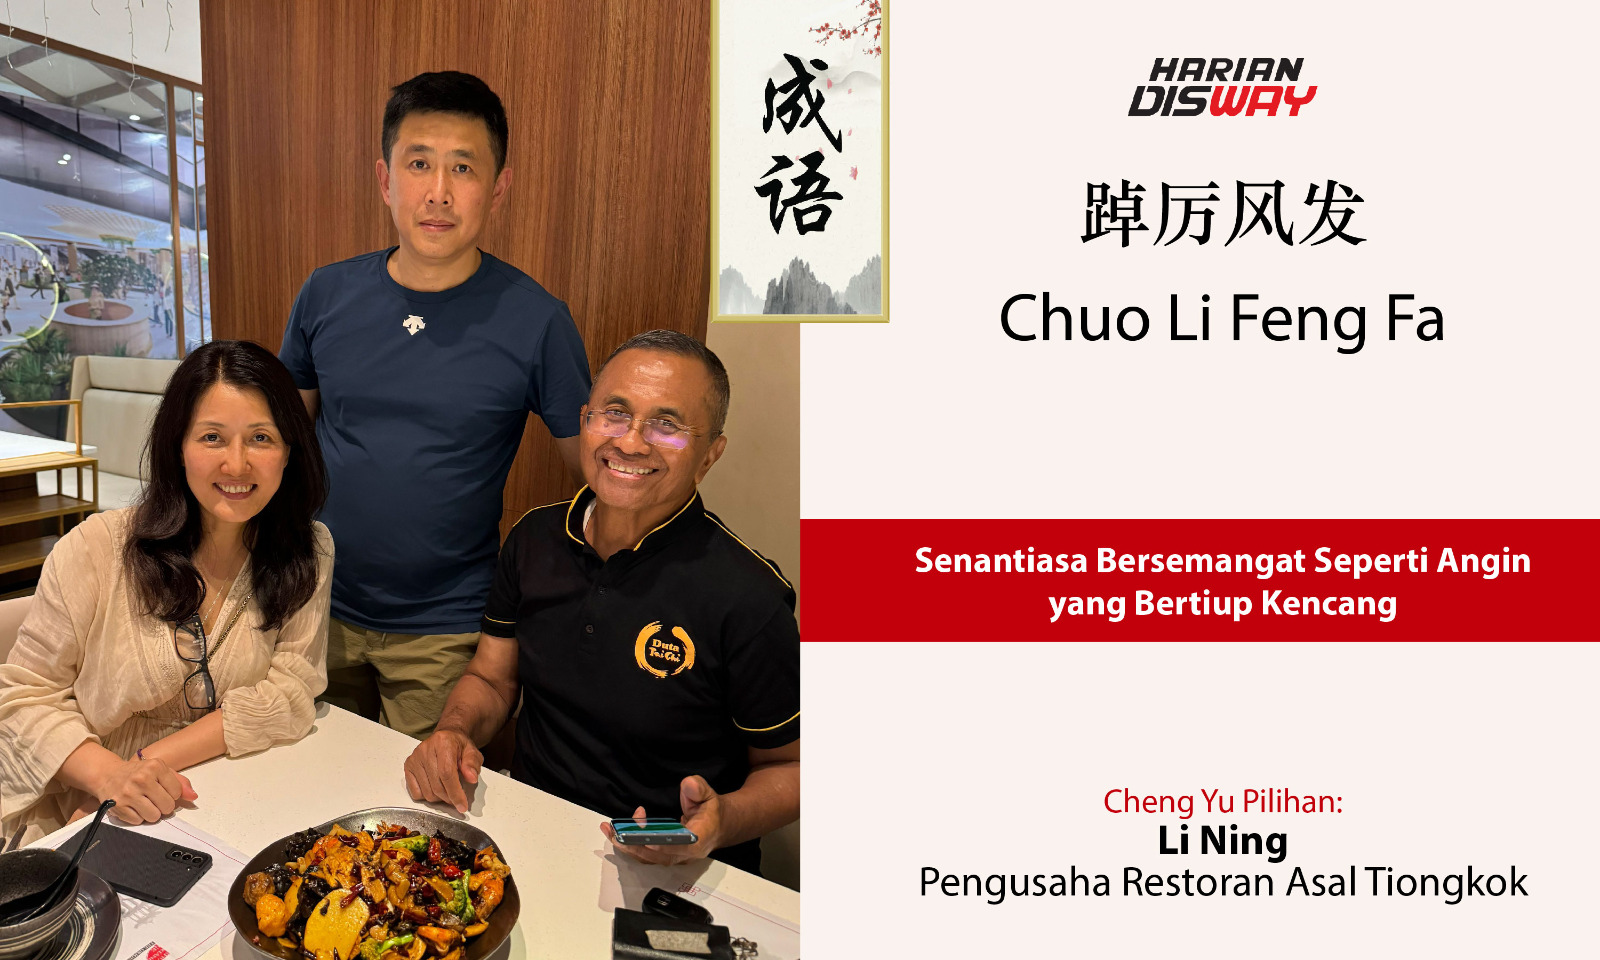 Cheng Yu Pilihan Pengusaha Restoran Asal Tiongkok Li Ning: Chuo Li Feng Fa